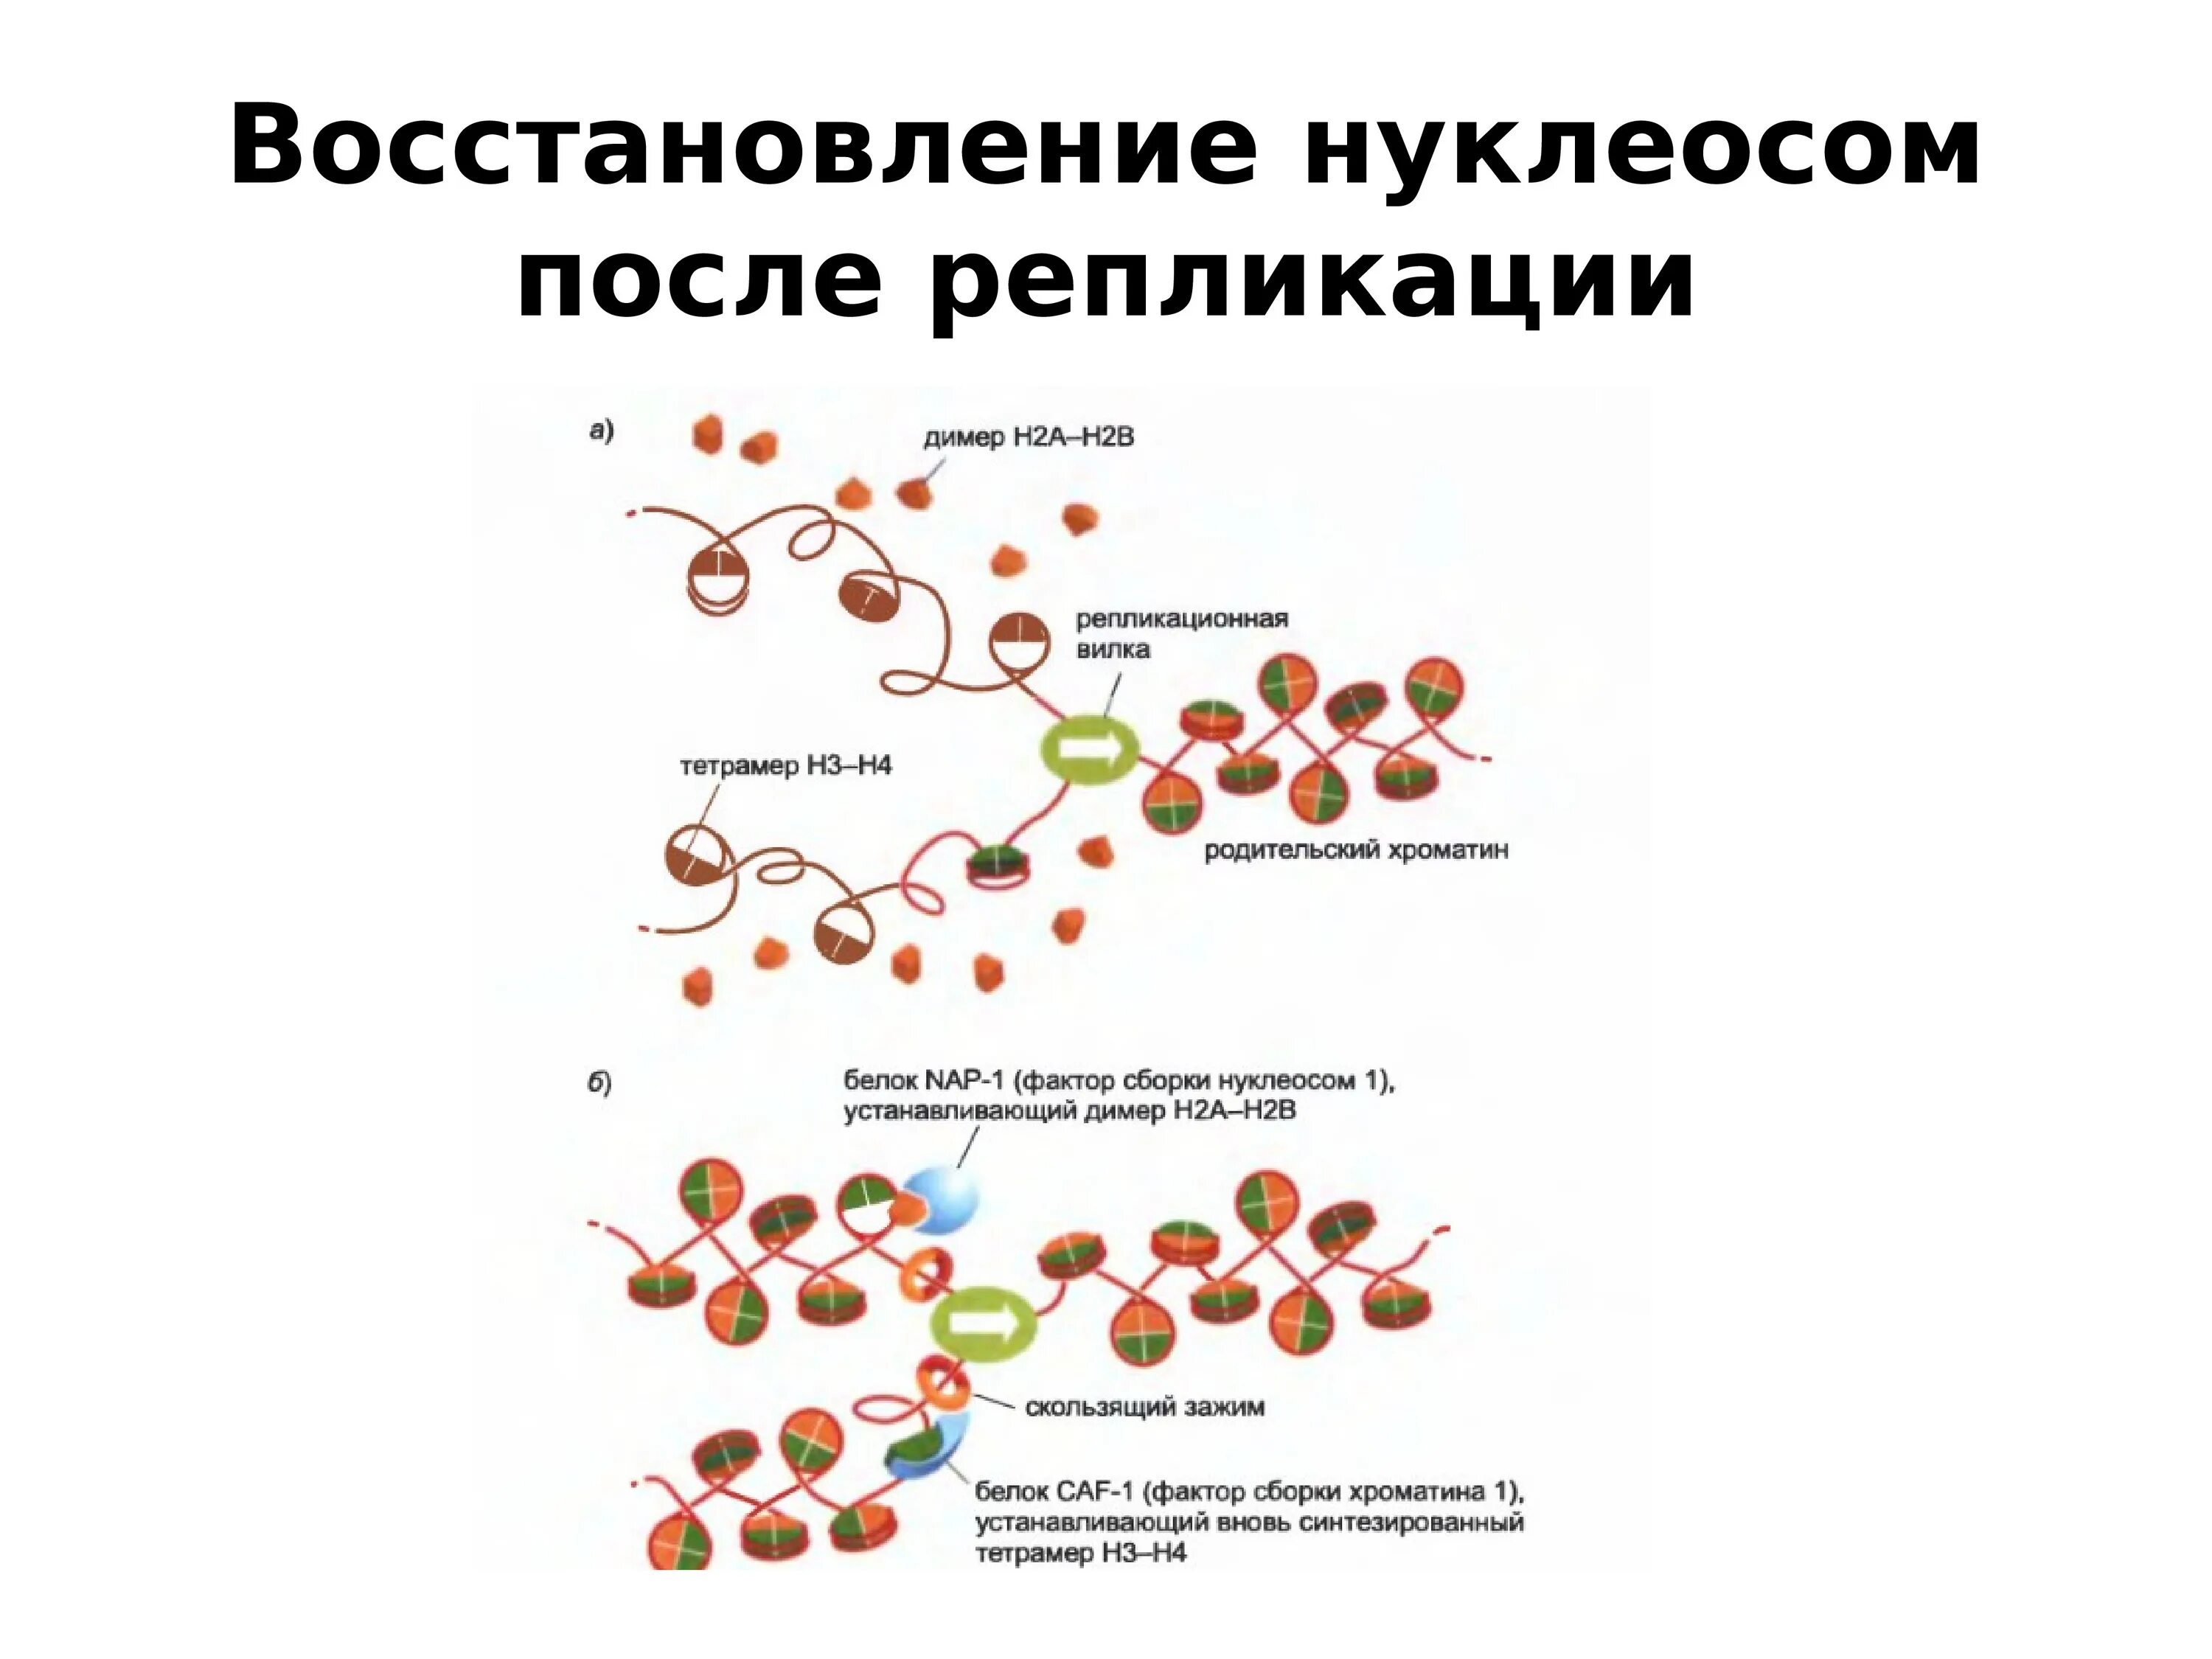 Связана с белками гистонами. Удвоение нуклеосом. Репликационная вилка эукариот. Белки хроматина. Репликация ДНК формирование нуклеосом и хроматина.